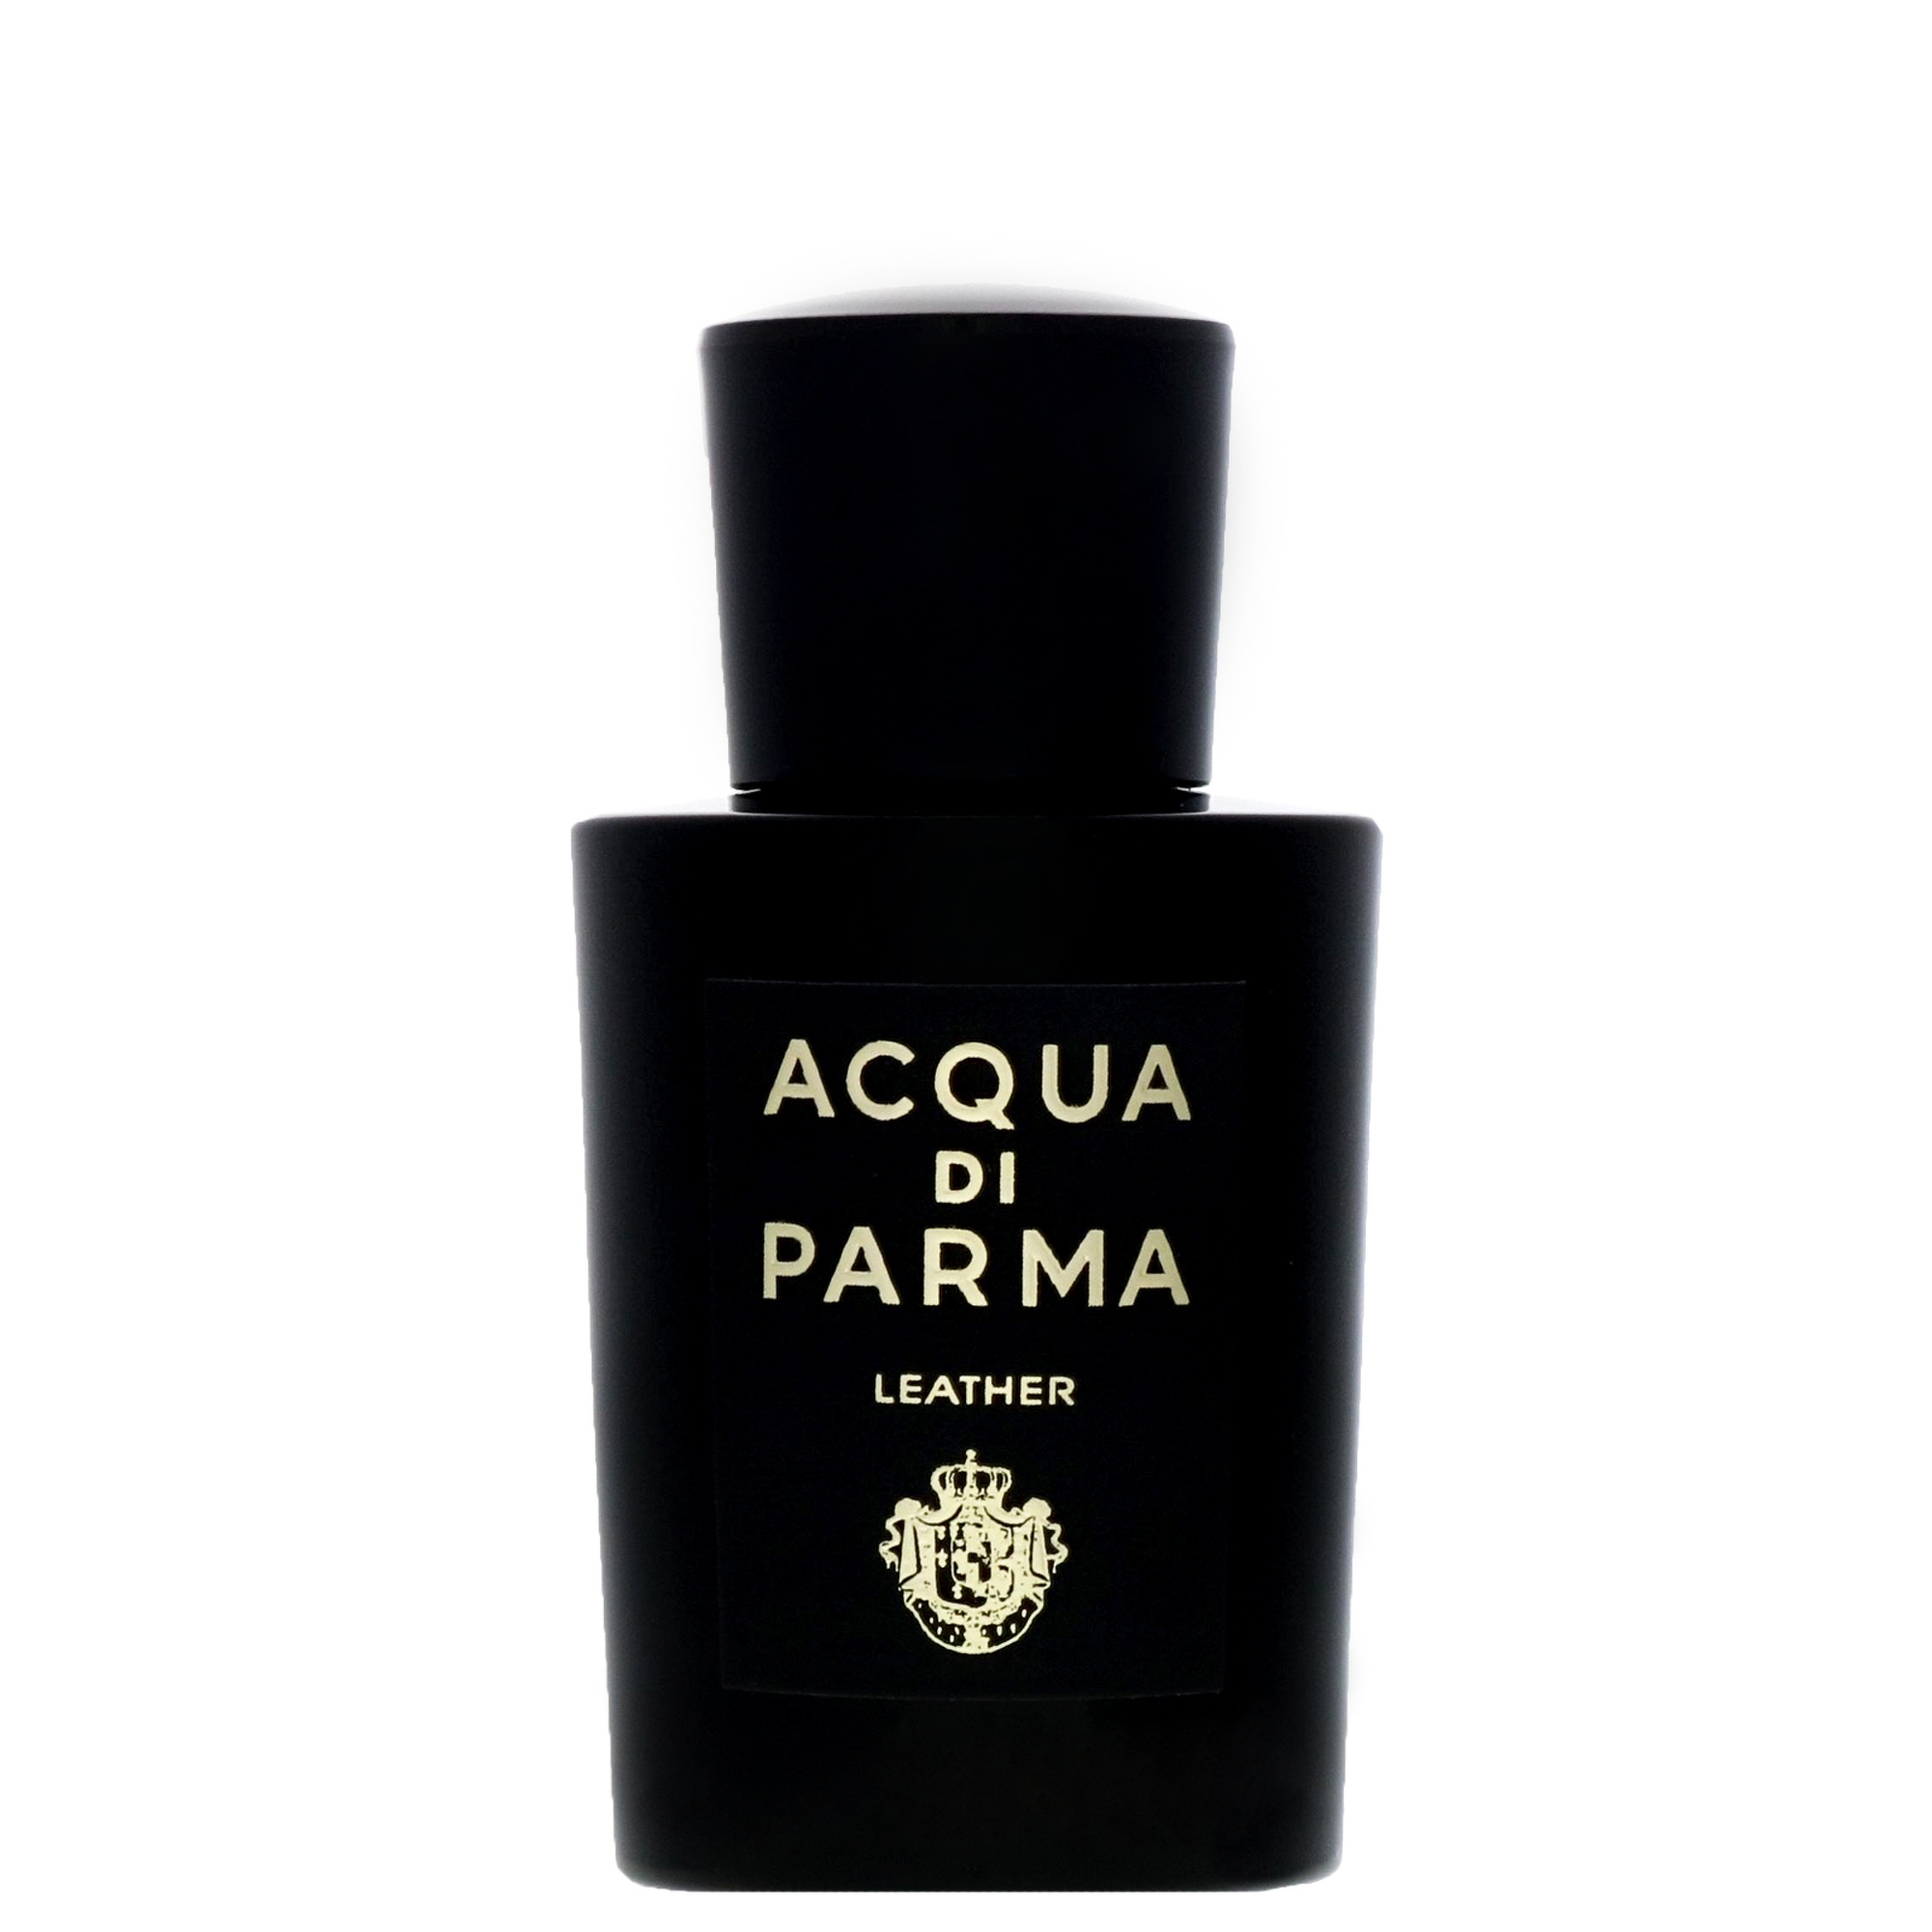 Photos - Men's Fragrance Acqua di Parma Leather Eau de Parfum Natural Spray 20ml 